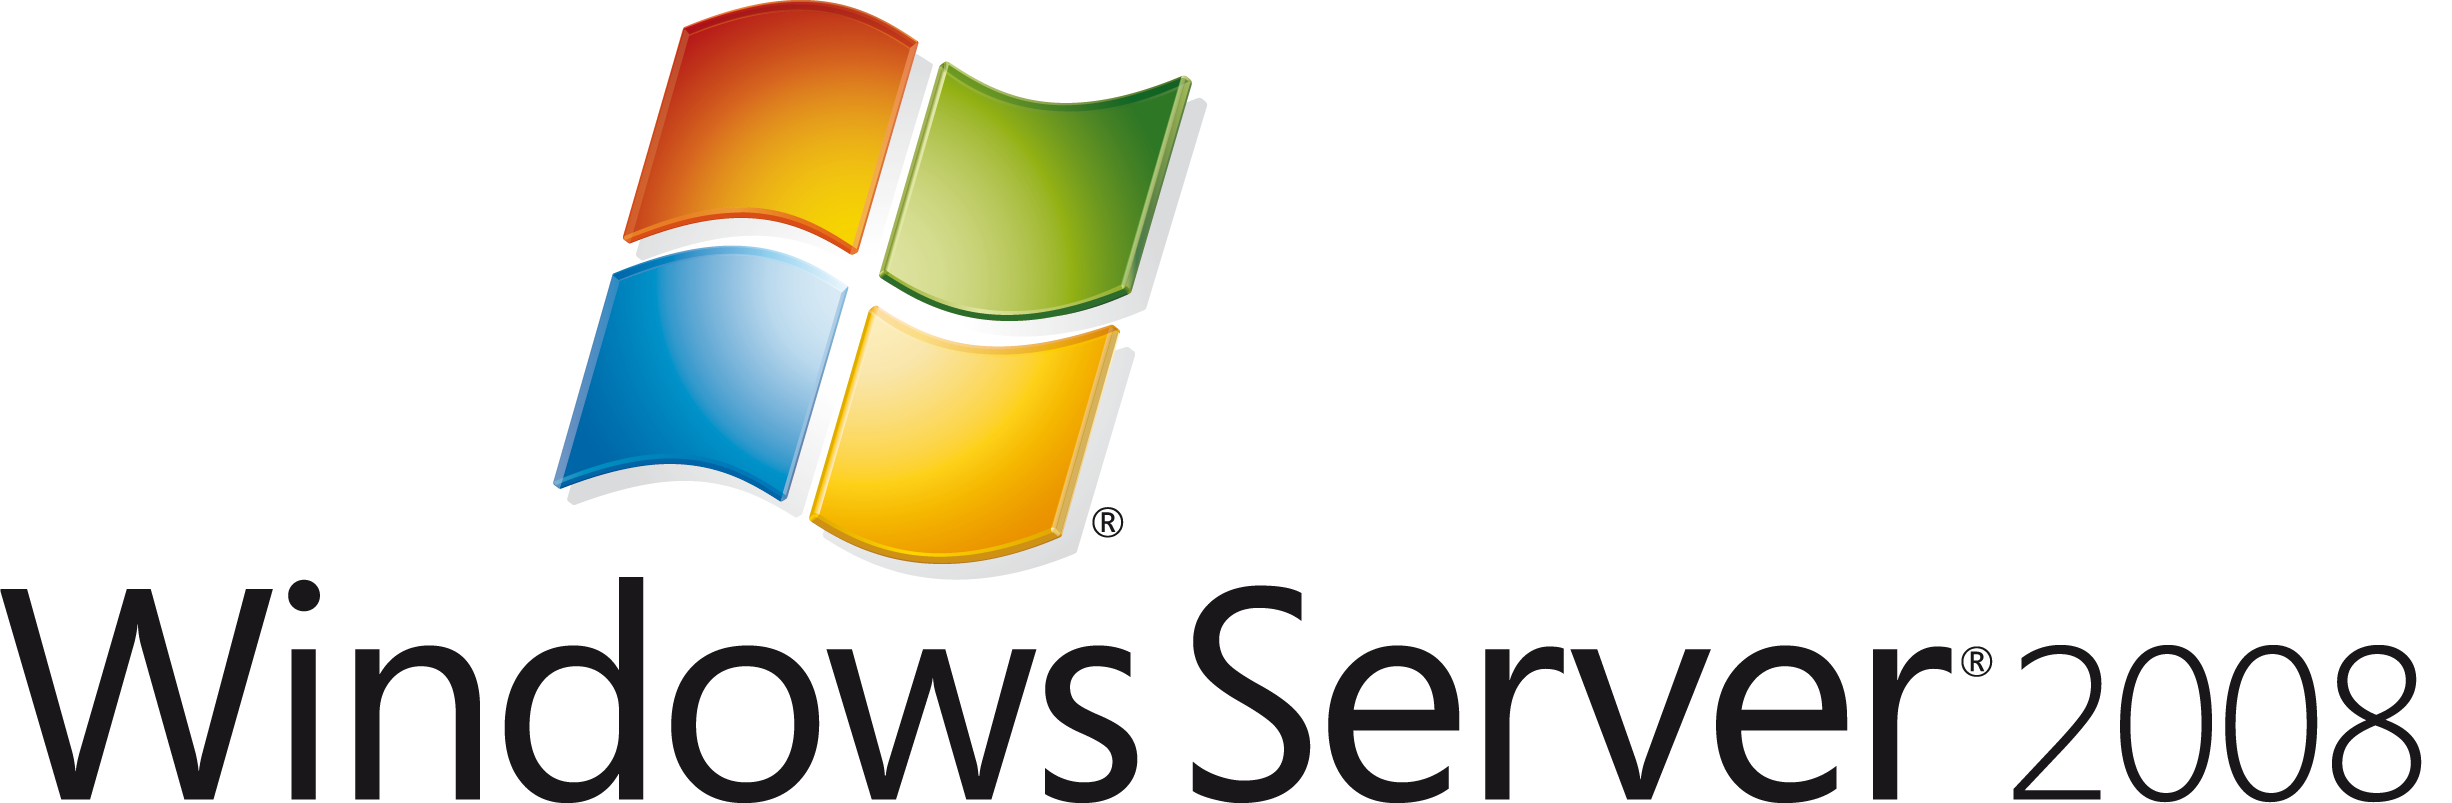 logo windows server 2008